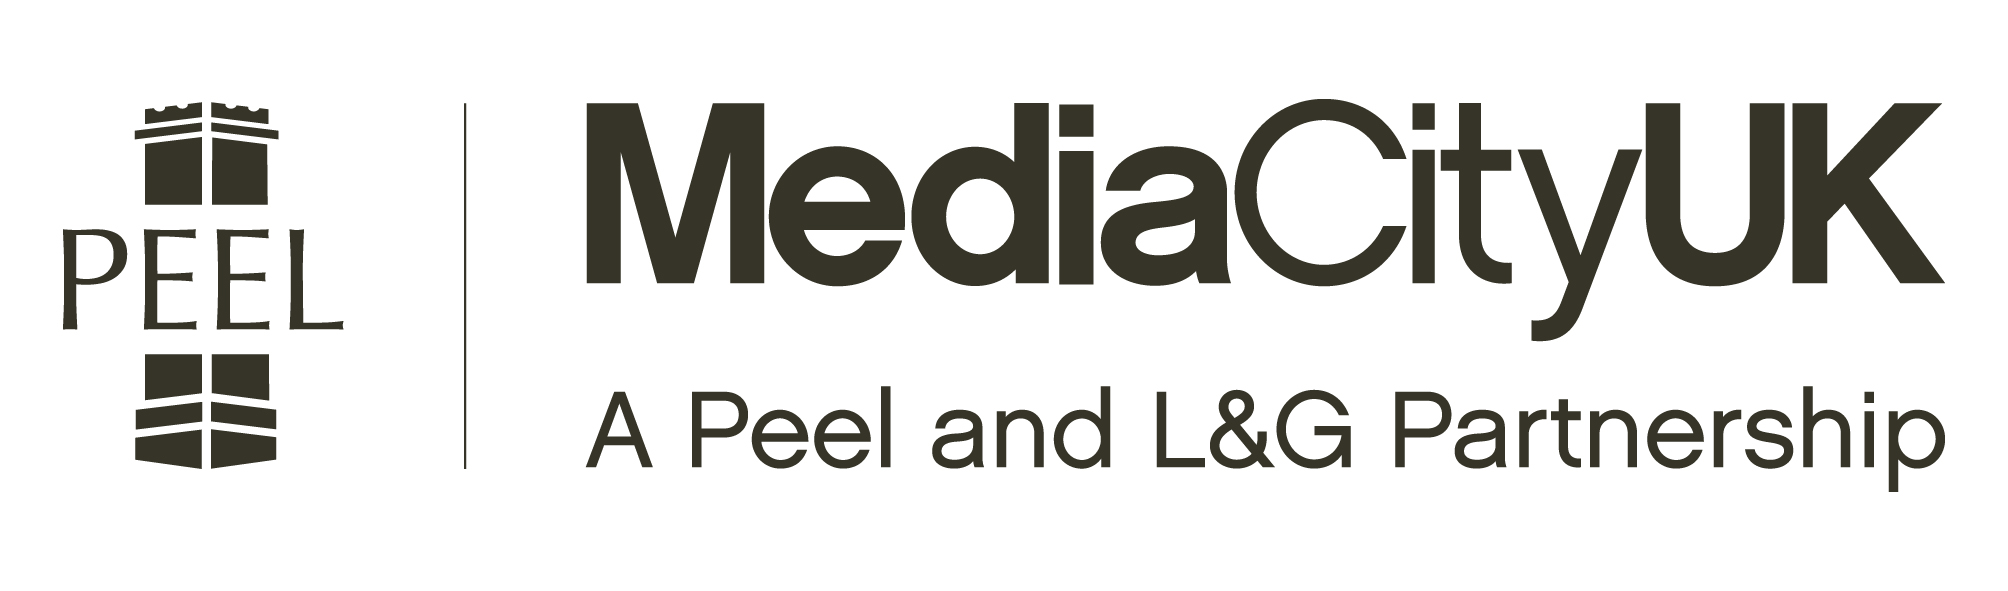 mediacityuk_logo